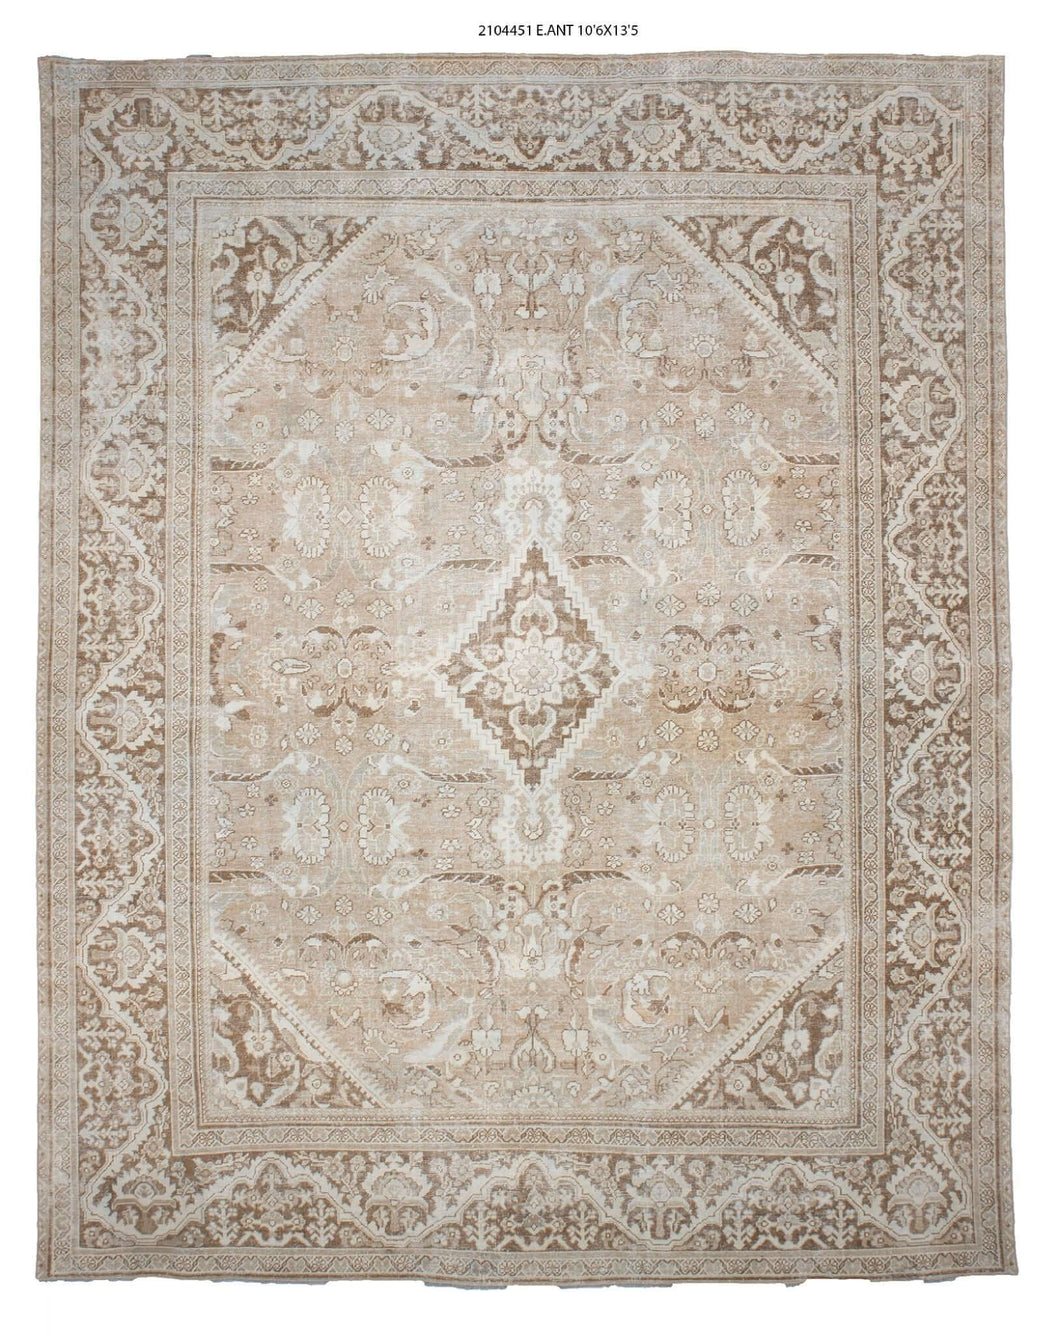 11x13 Old & Vintage Turkish Area Rug-turkish_rugs-oriental_rugs-kilim_rugs-oushak_rugs